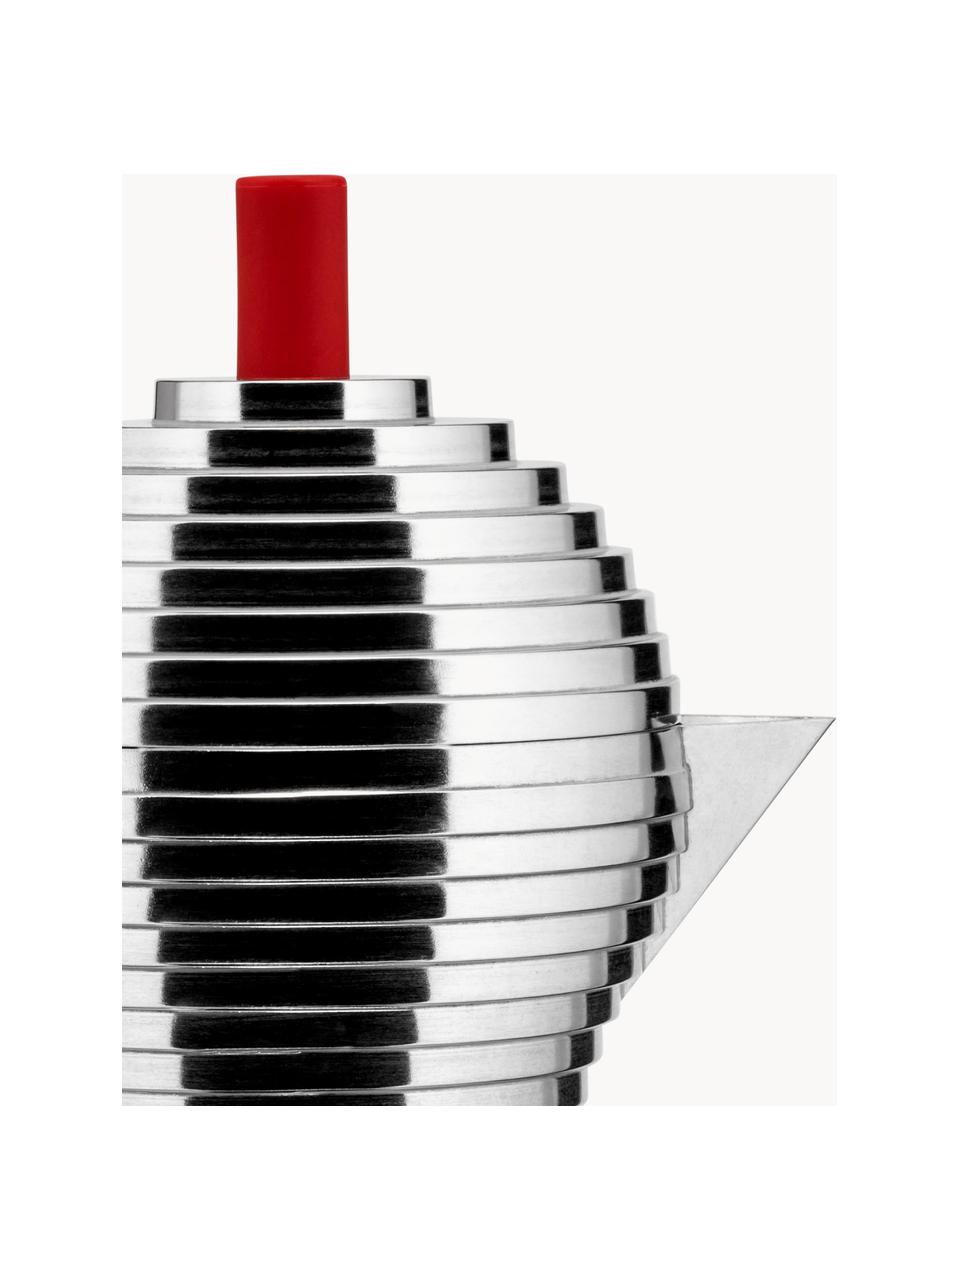 Espressokocher Pulcina, Gehäuse: Aluminiumguss, Griffe: Polyamid, Silberfarben, Rot, B 20 x H 26 cm, für sechs Tassen